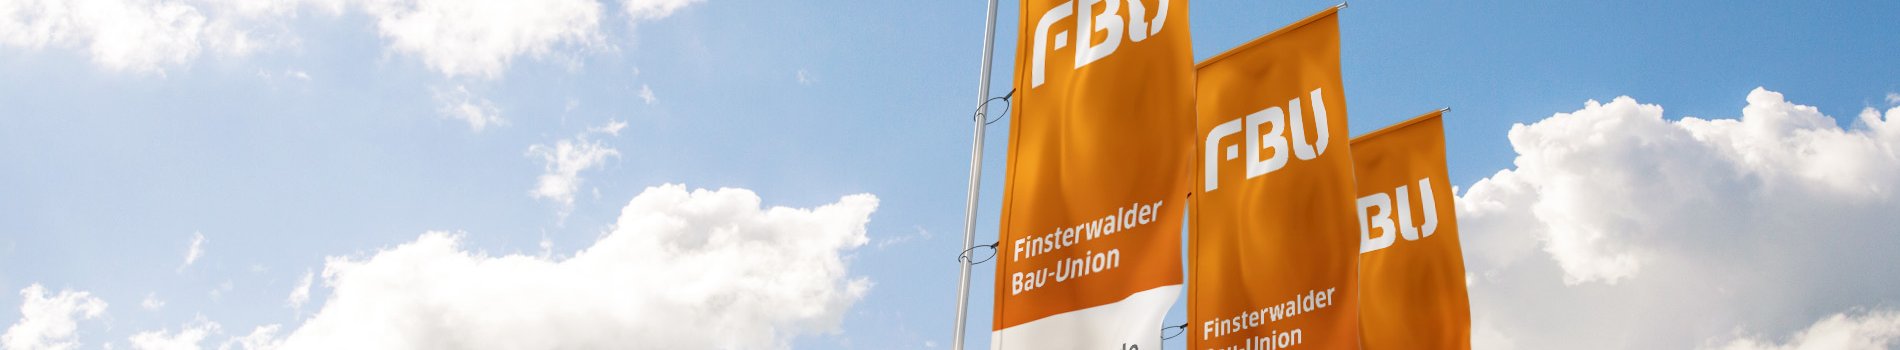 Die FBU ist ein mittelständisches Hoch- und Tiefbauunternehmen, das bundesweit für private und öffentliche Auftraggeber Bauleistungen erbringt